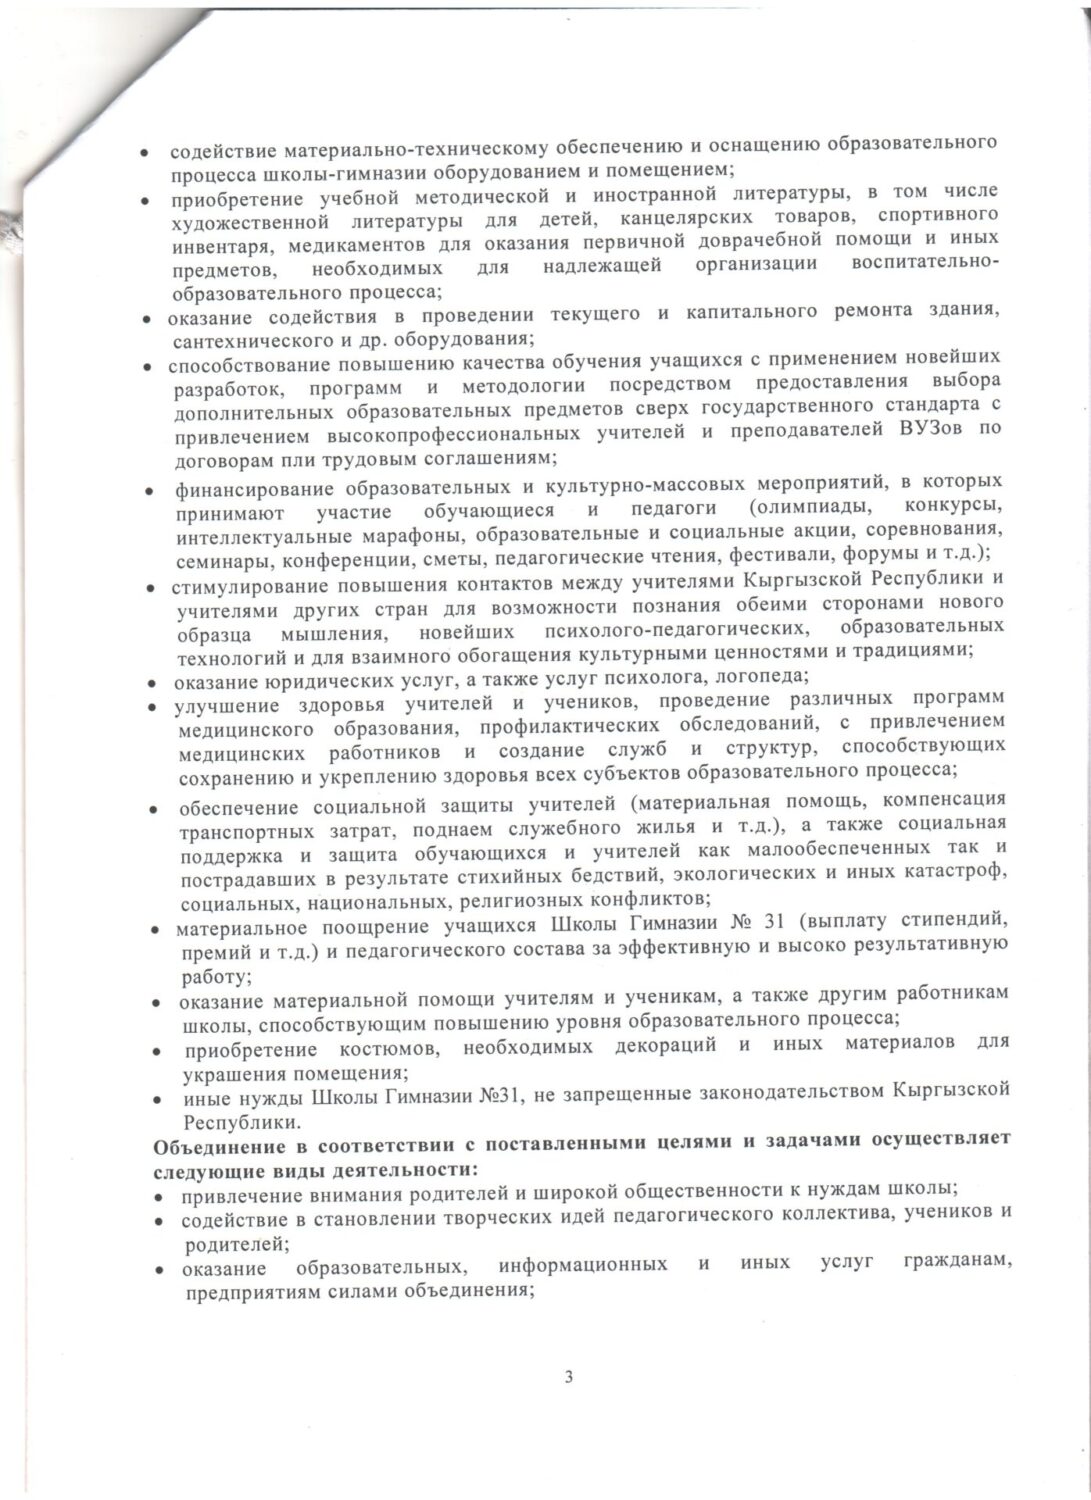 Устав Общественного объединения поддержки и развития Школы-Гимназии № 31